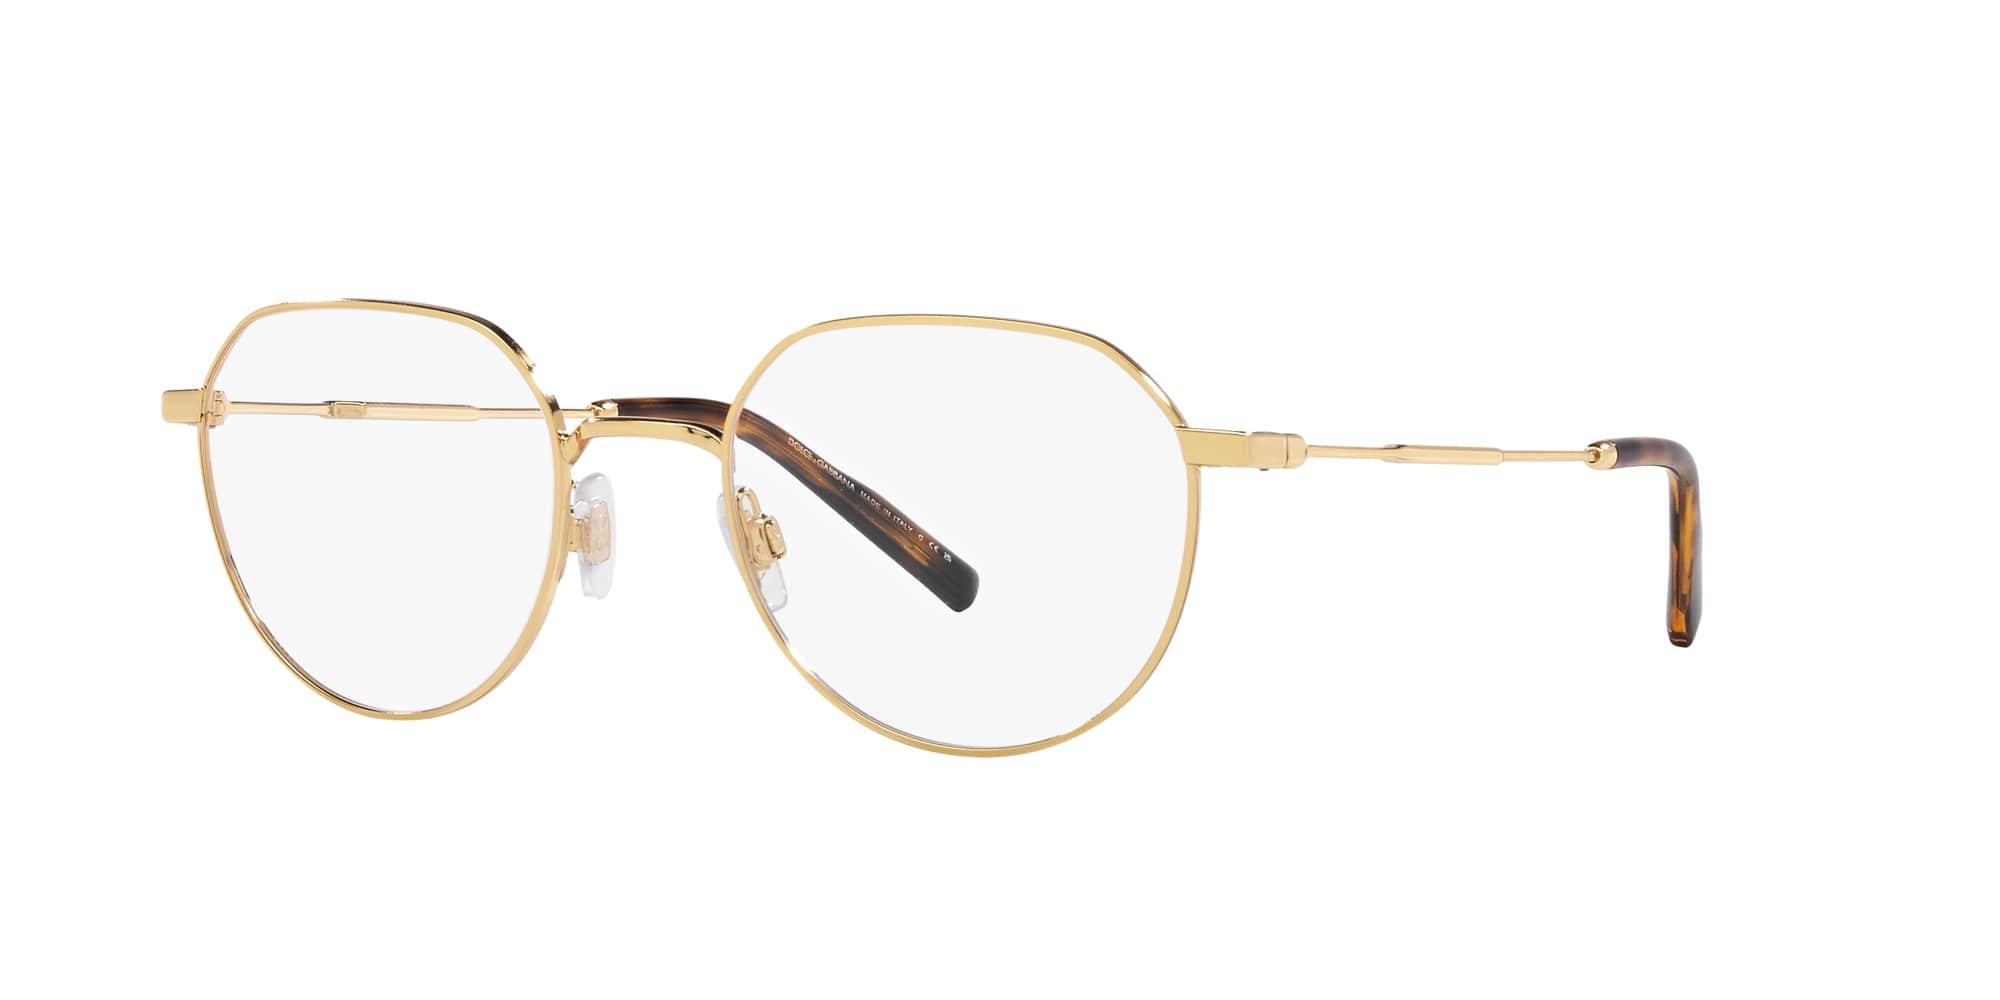 Das Bild zeigt die Korrektionsbrille DG1349 02 von der Marke D&G in gold.